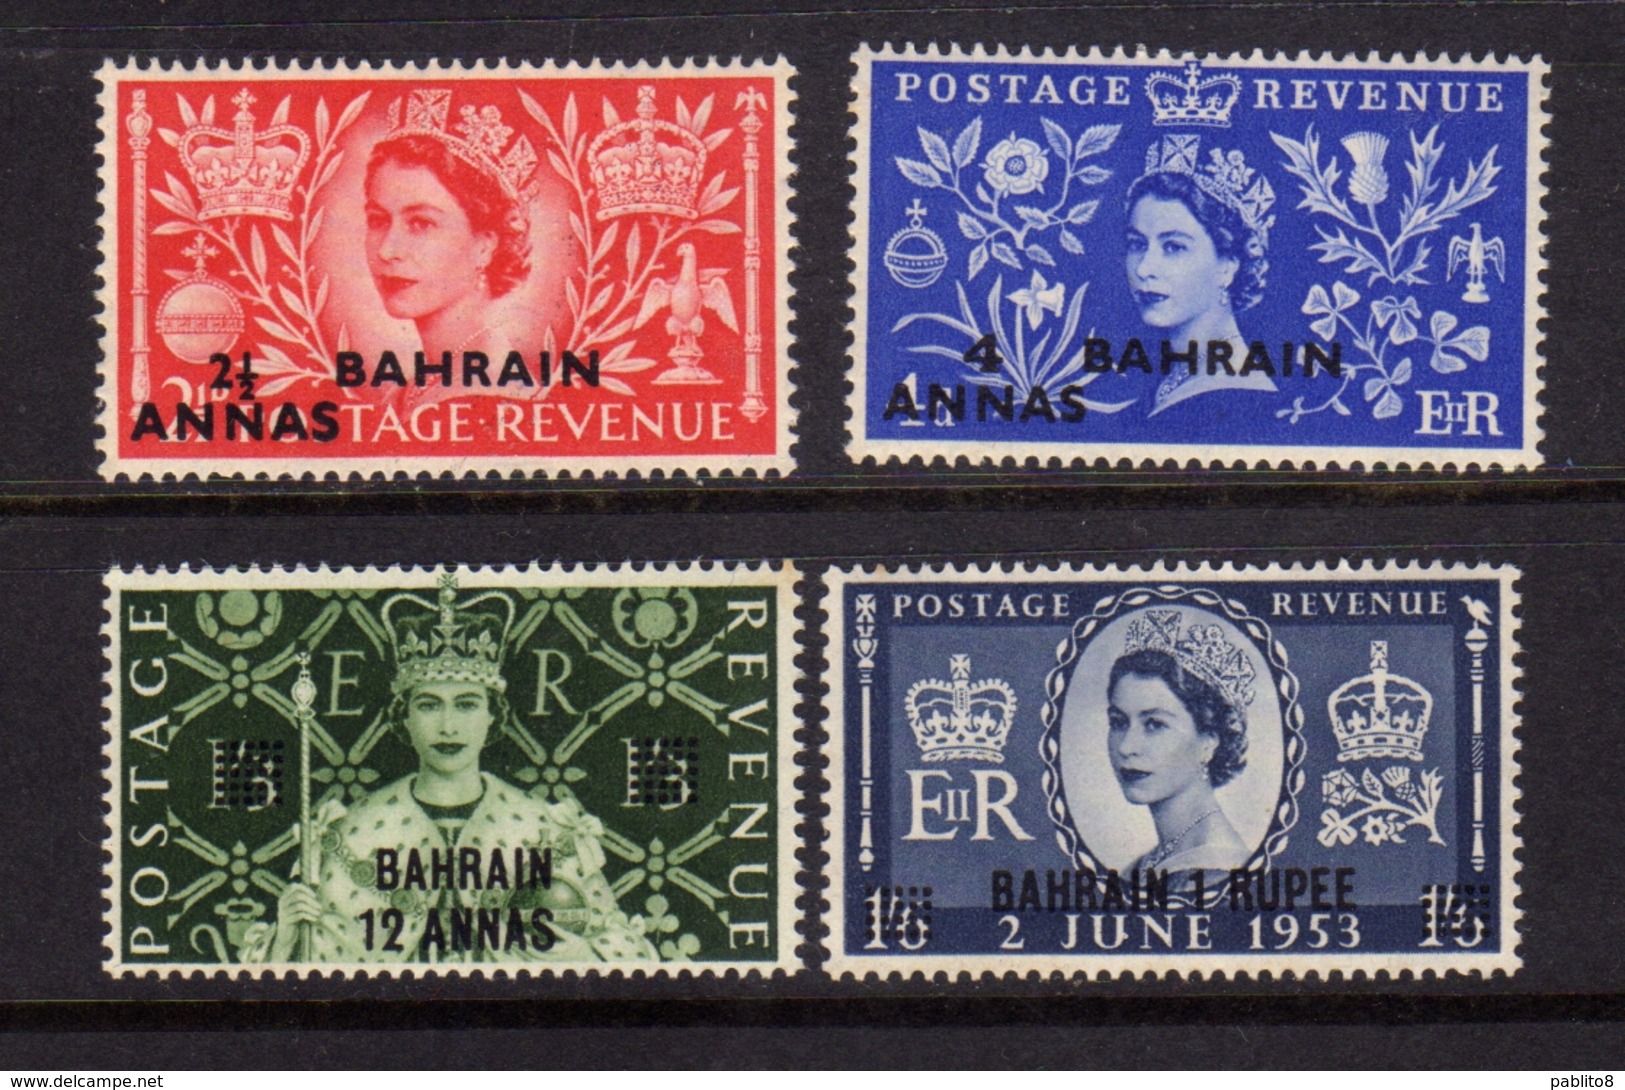 BAHRAIN BAHREIN 1953 CORONATION ISSUE QUEEN ELIZABETH II REGINA ELISABETTA INCORONAZIONE COMPLETE SET SERIE COMPLETA MNH - Bahrein (...-1965)